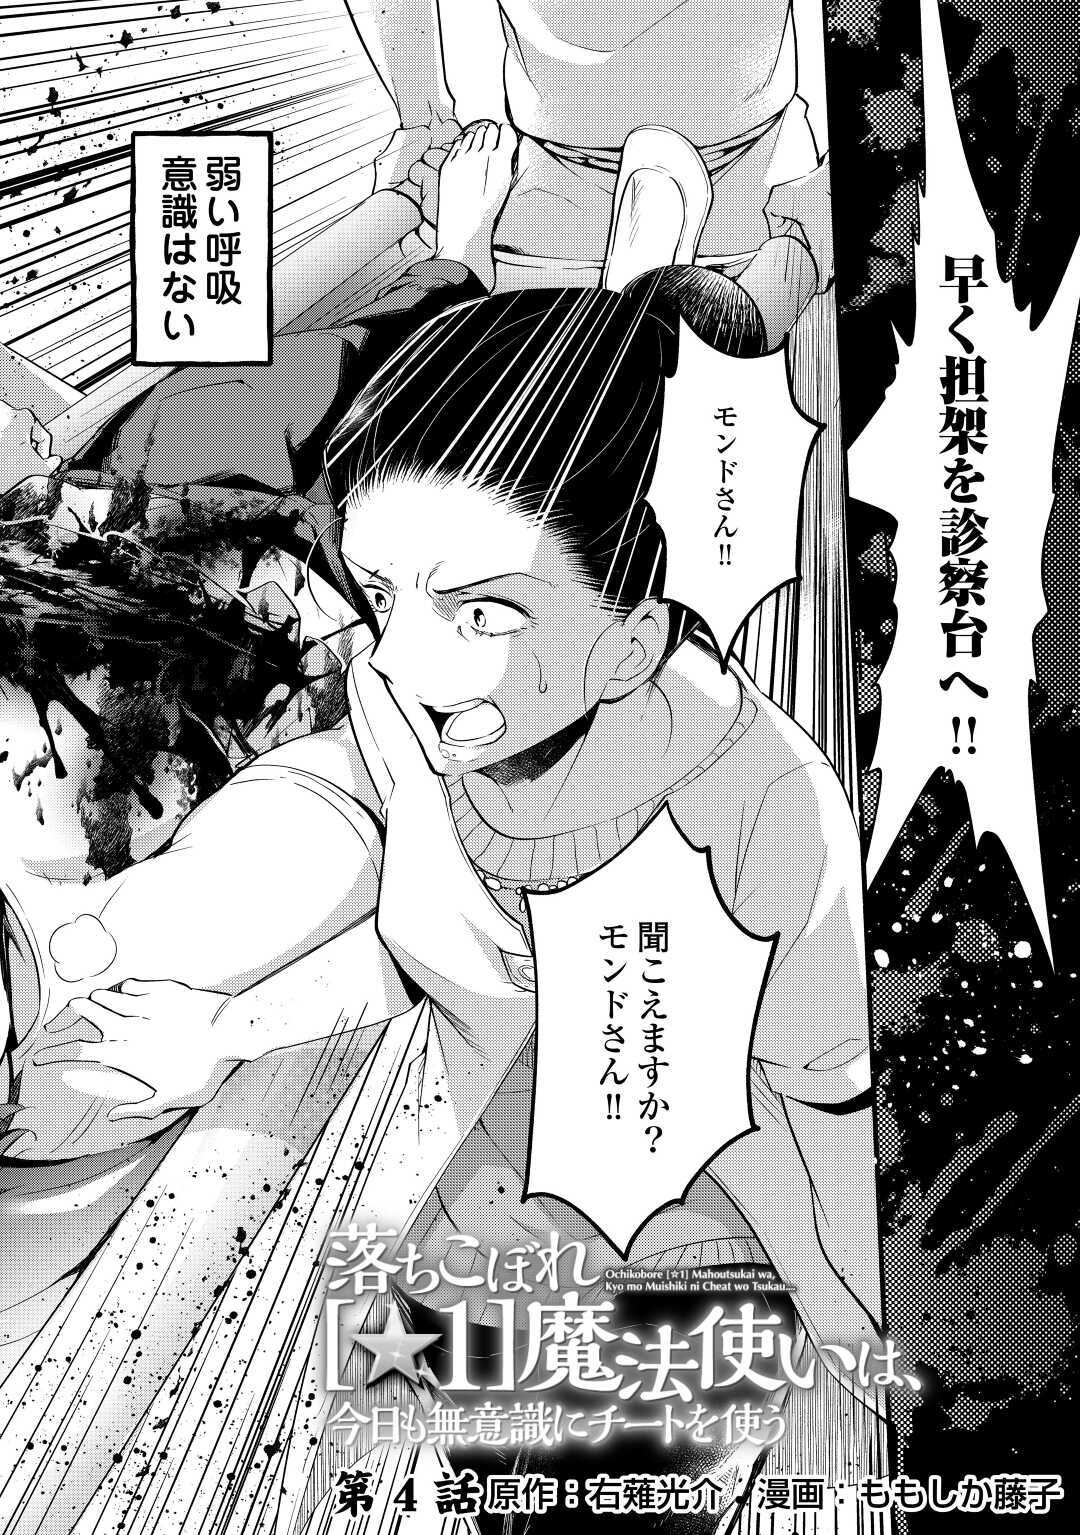 Ochikobore 1 Mahou Tsukai wa, Kyou mo Muishiki ni Cheat o Tsukau - Chapter 4 - Page 2